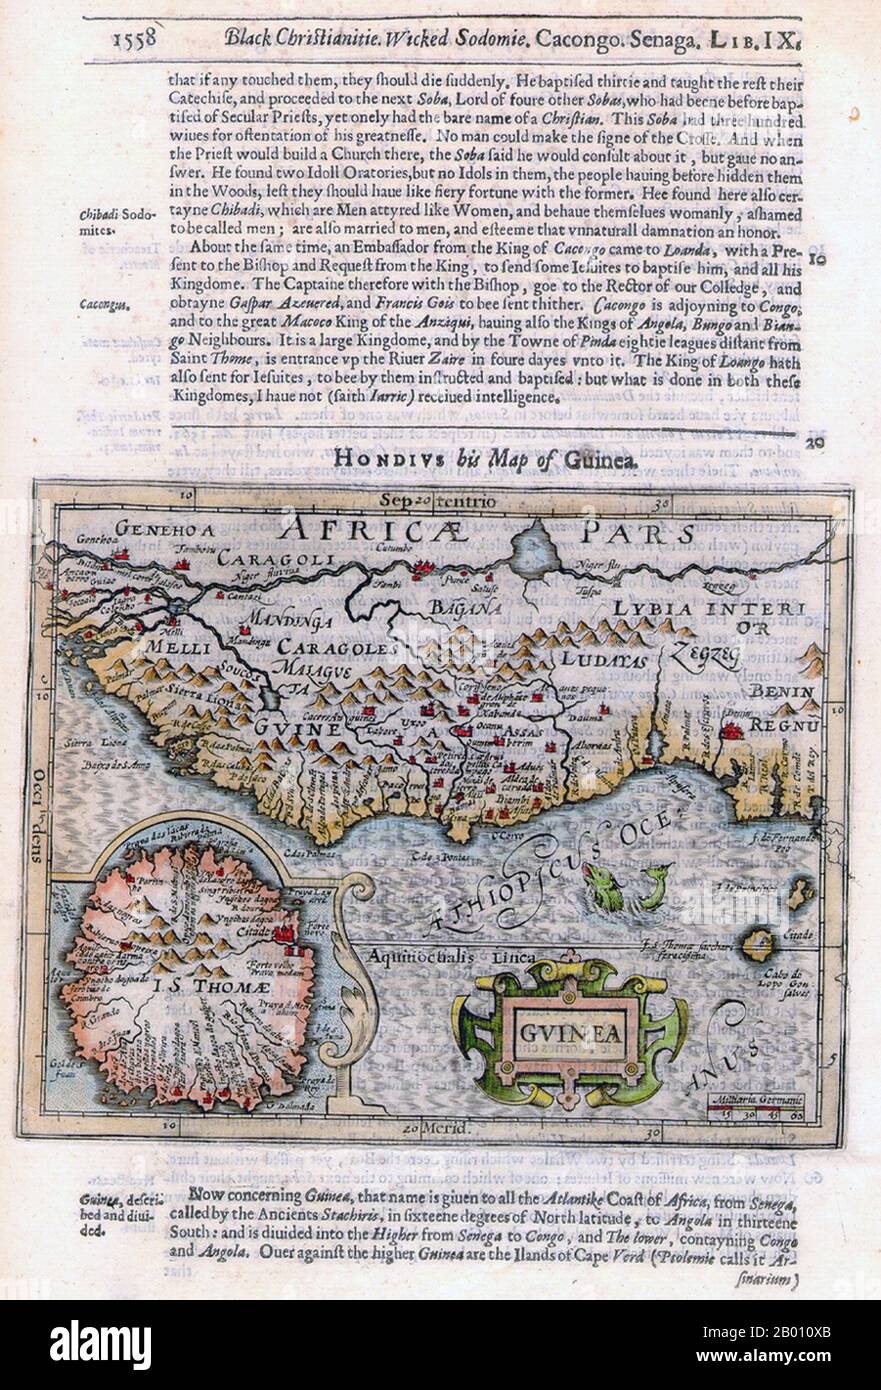 Afrika: Karte von Guinea und Umgebung von Jodocus Hondius (1563-1612), 1625. 'Benin Regnu', das Königreich Benin, ist im Südosten angegeben. Ganzseitige Version mit dem Titel: 'Black Christianitie, Wicked Sodomie'. Stockfoto